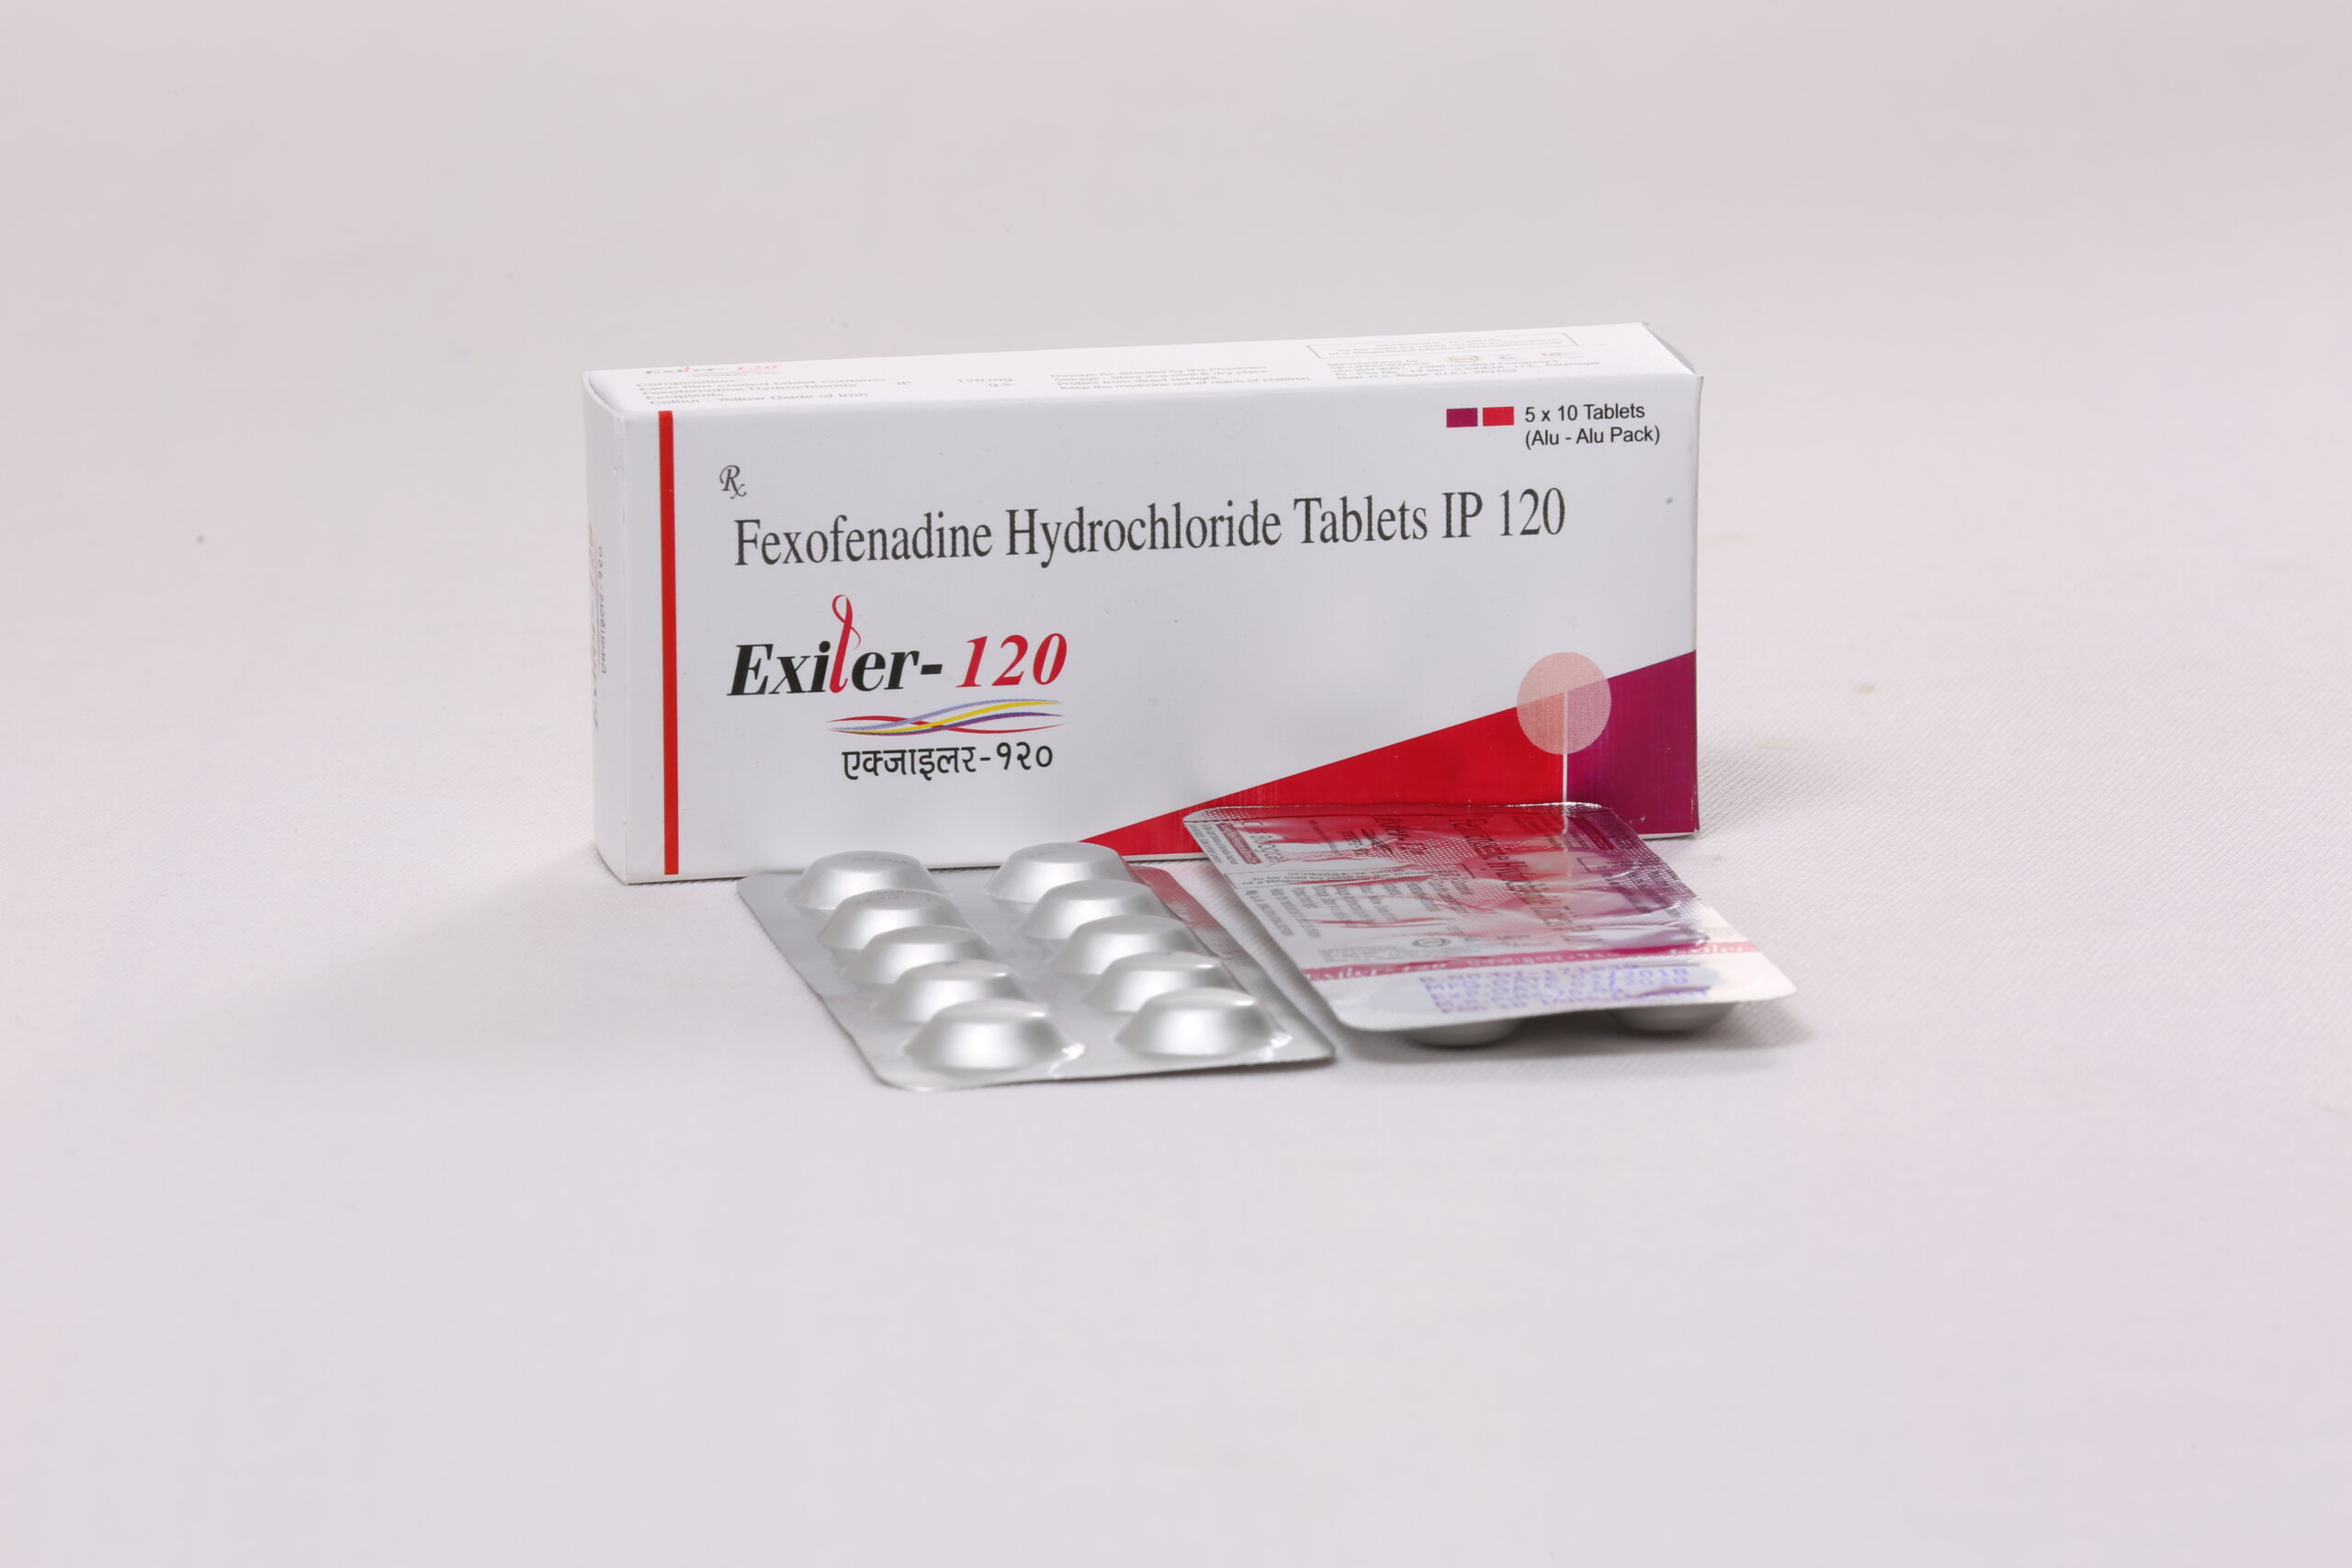 EXILER-120 (Fexofenadine HCL 120mg)